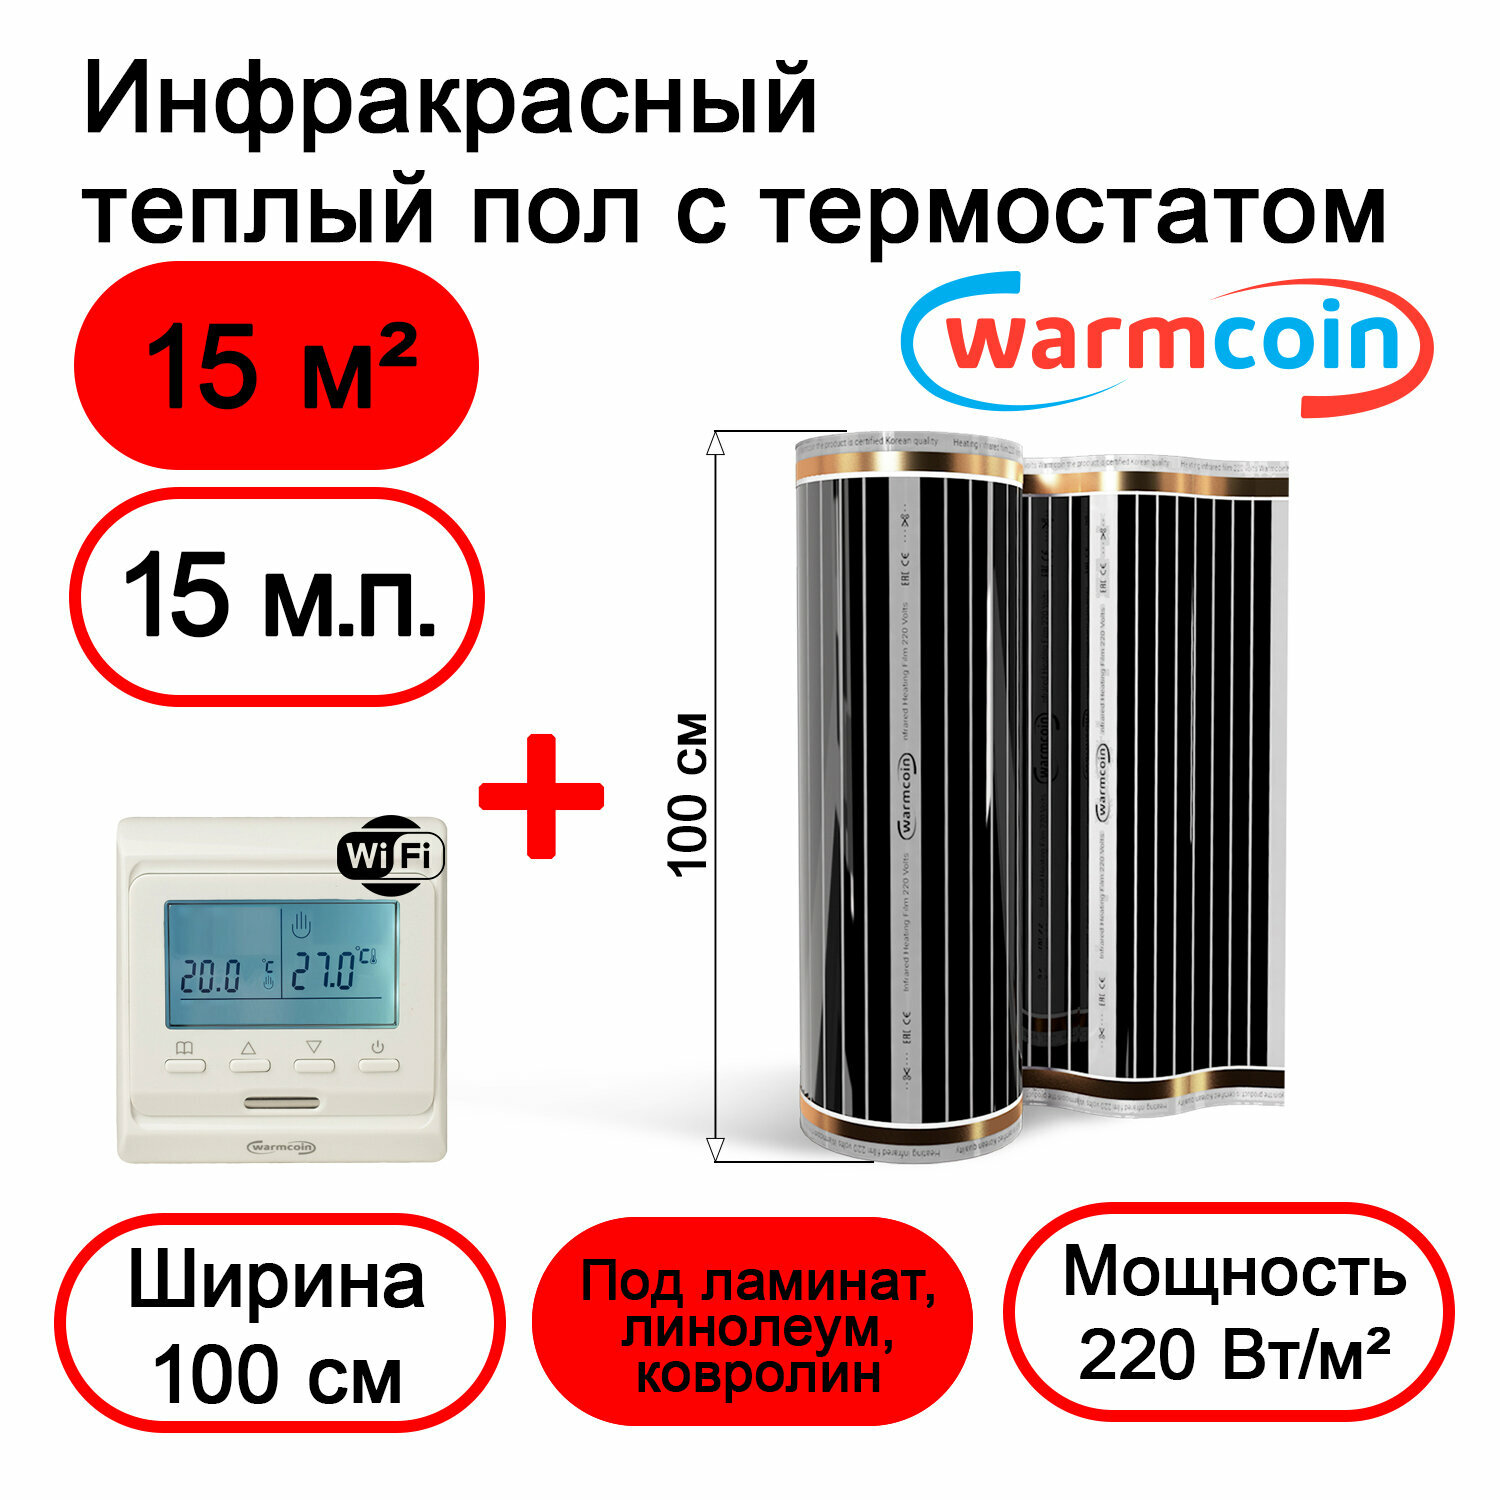 Теплый пол Warmcoin инфракрасный 100 см, 220 Вт/м. кв. с терморегулятором Wi-Fi, 15м. п.